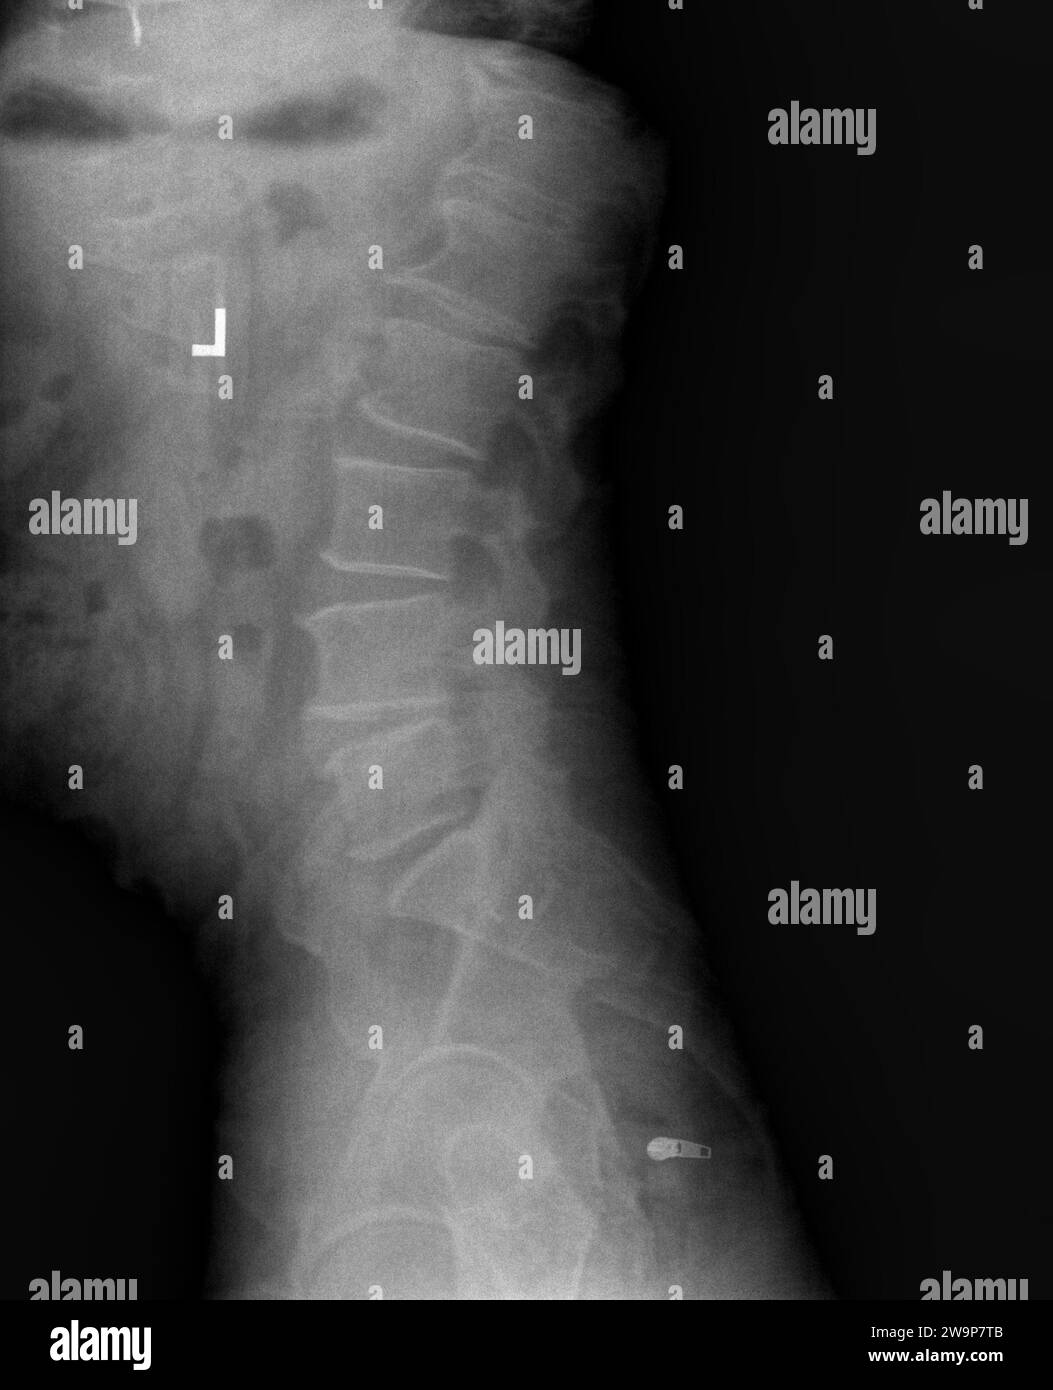 Radiographie de film ou radiographie des vertèbres lombaires bas du dos montrant le syndrome de facette articulaire de la zone L4 L5 qui est une condition semblable à l'arthrite de la colonne vertébrale qui Banque D'Images